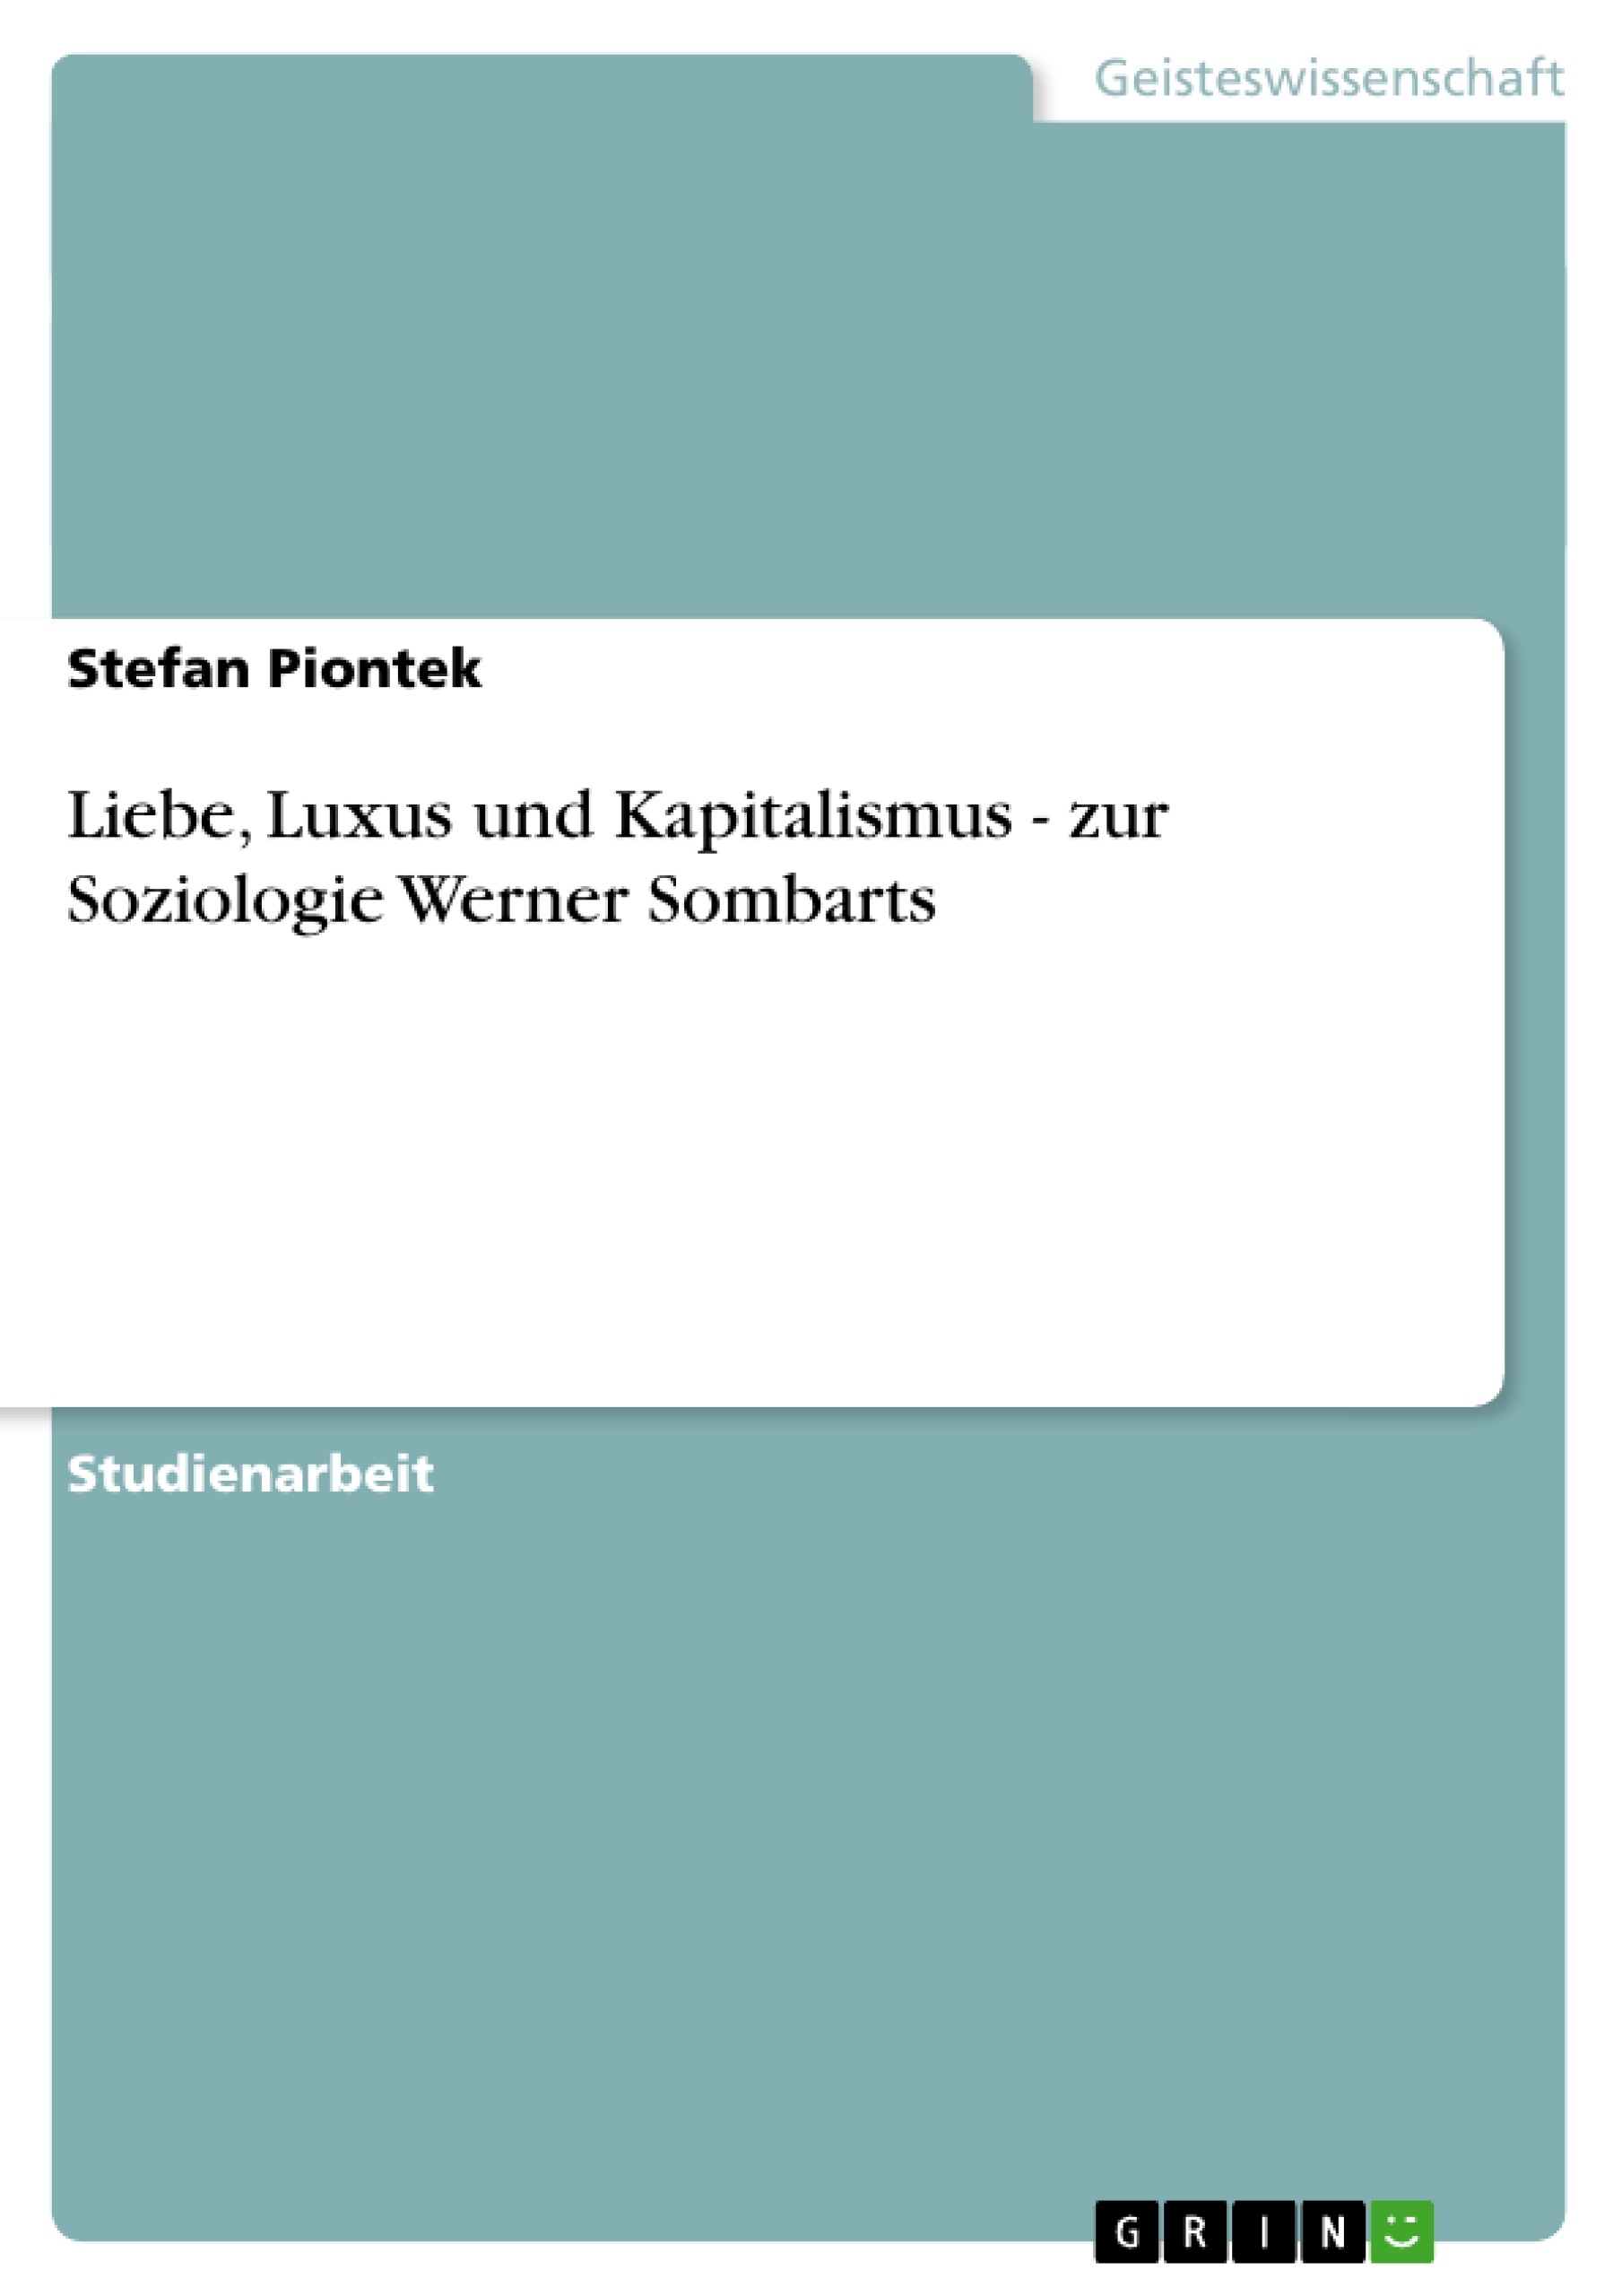 Titre: Liebe, Luxus und Kapitalismus - zur Soziologie Werner Sombarts